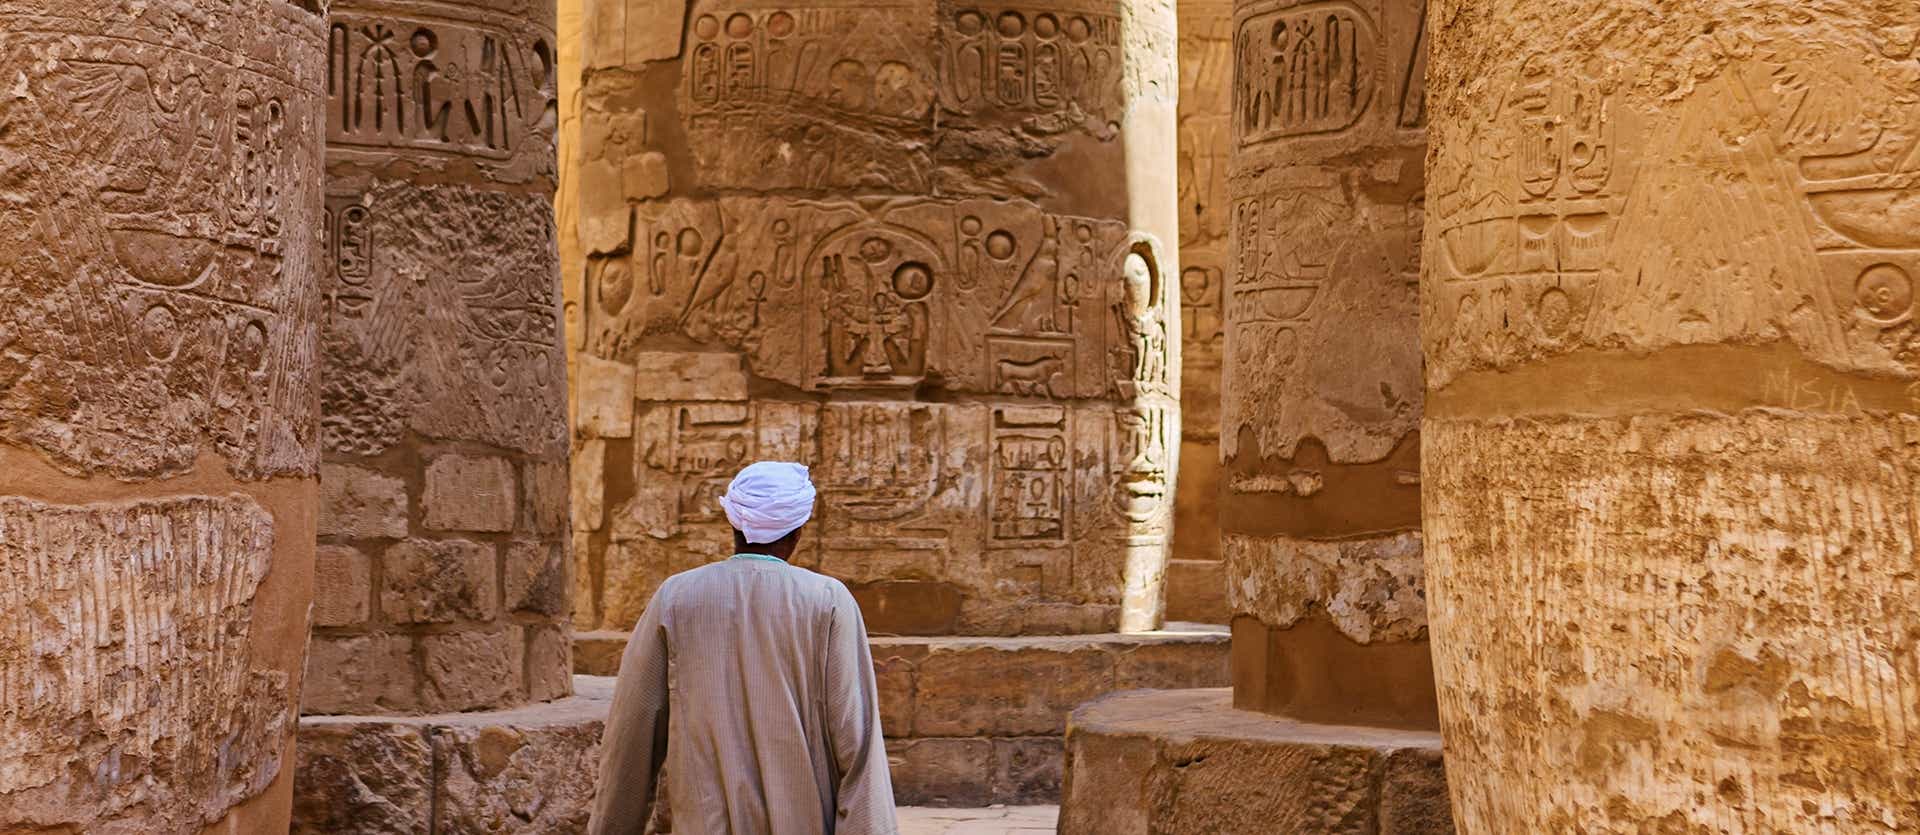 Karnak Temple Complex <span class="iconos separador"></span> Egypt